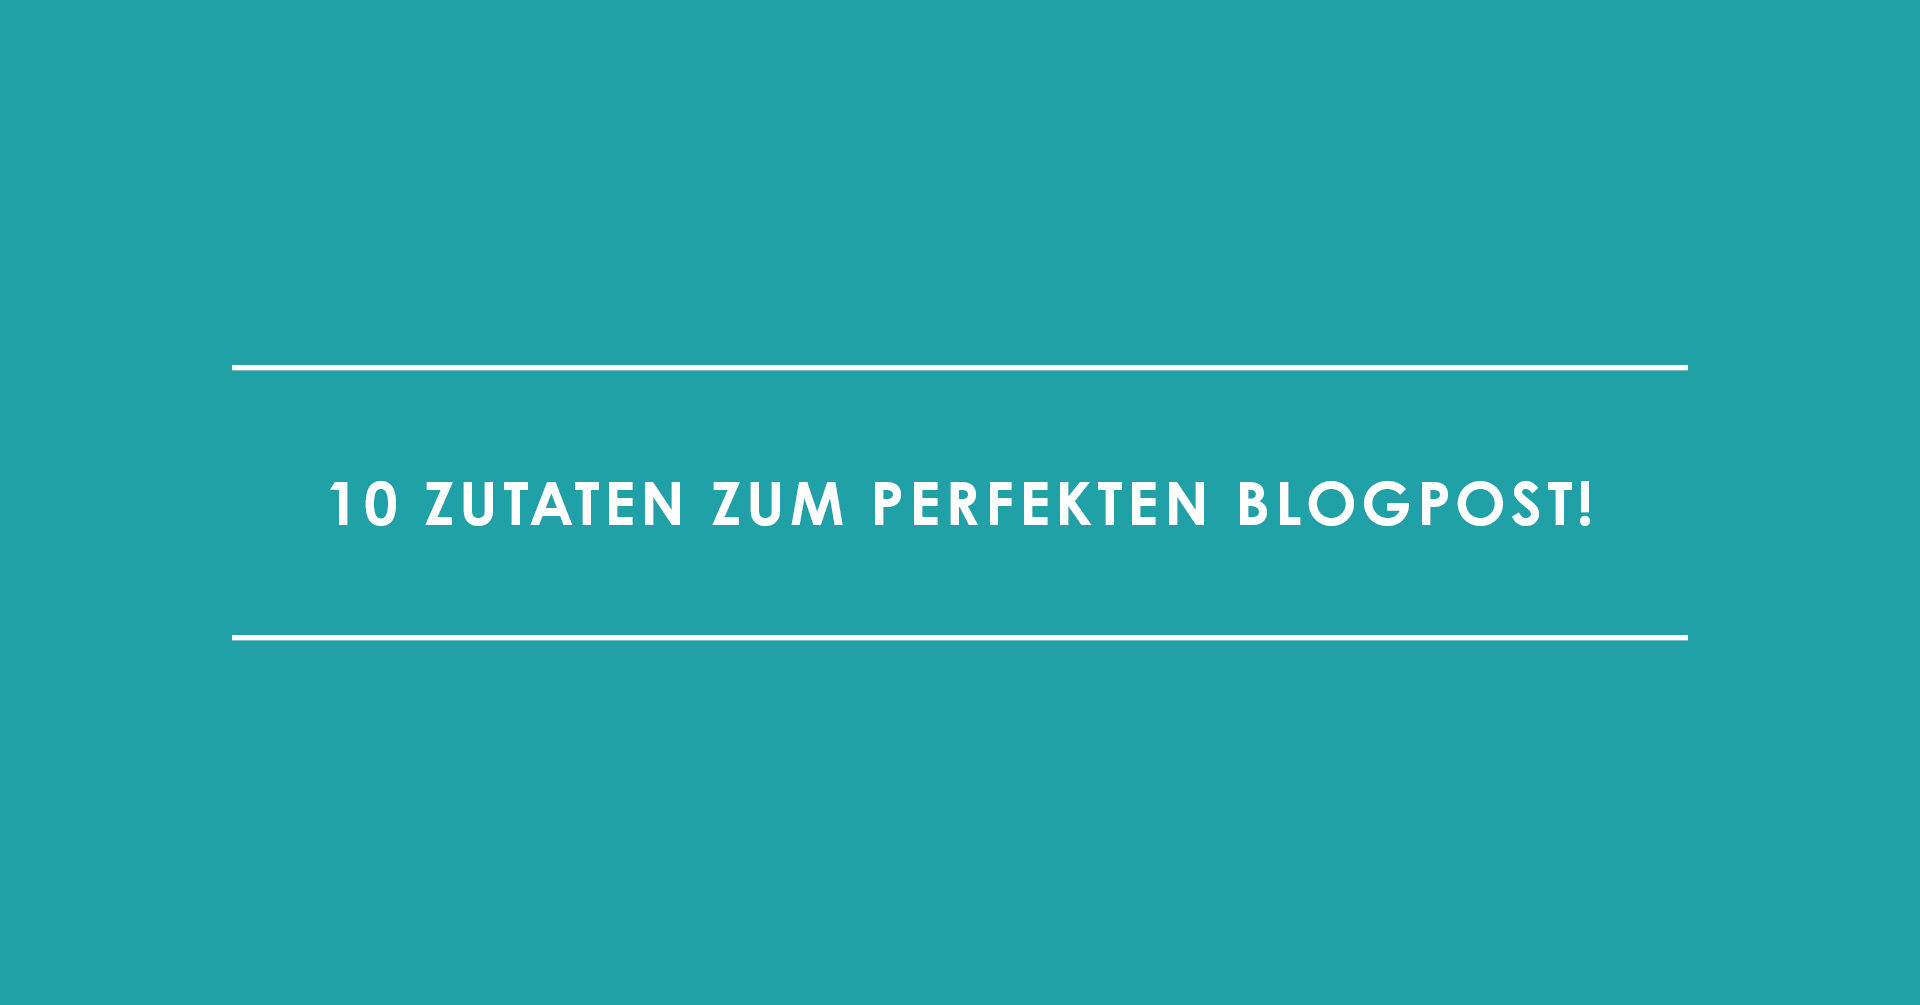 Blog schreiben: 10 Zutaten zum perfekten Blogpost!